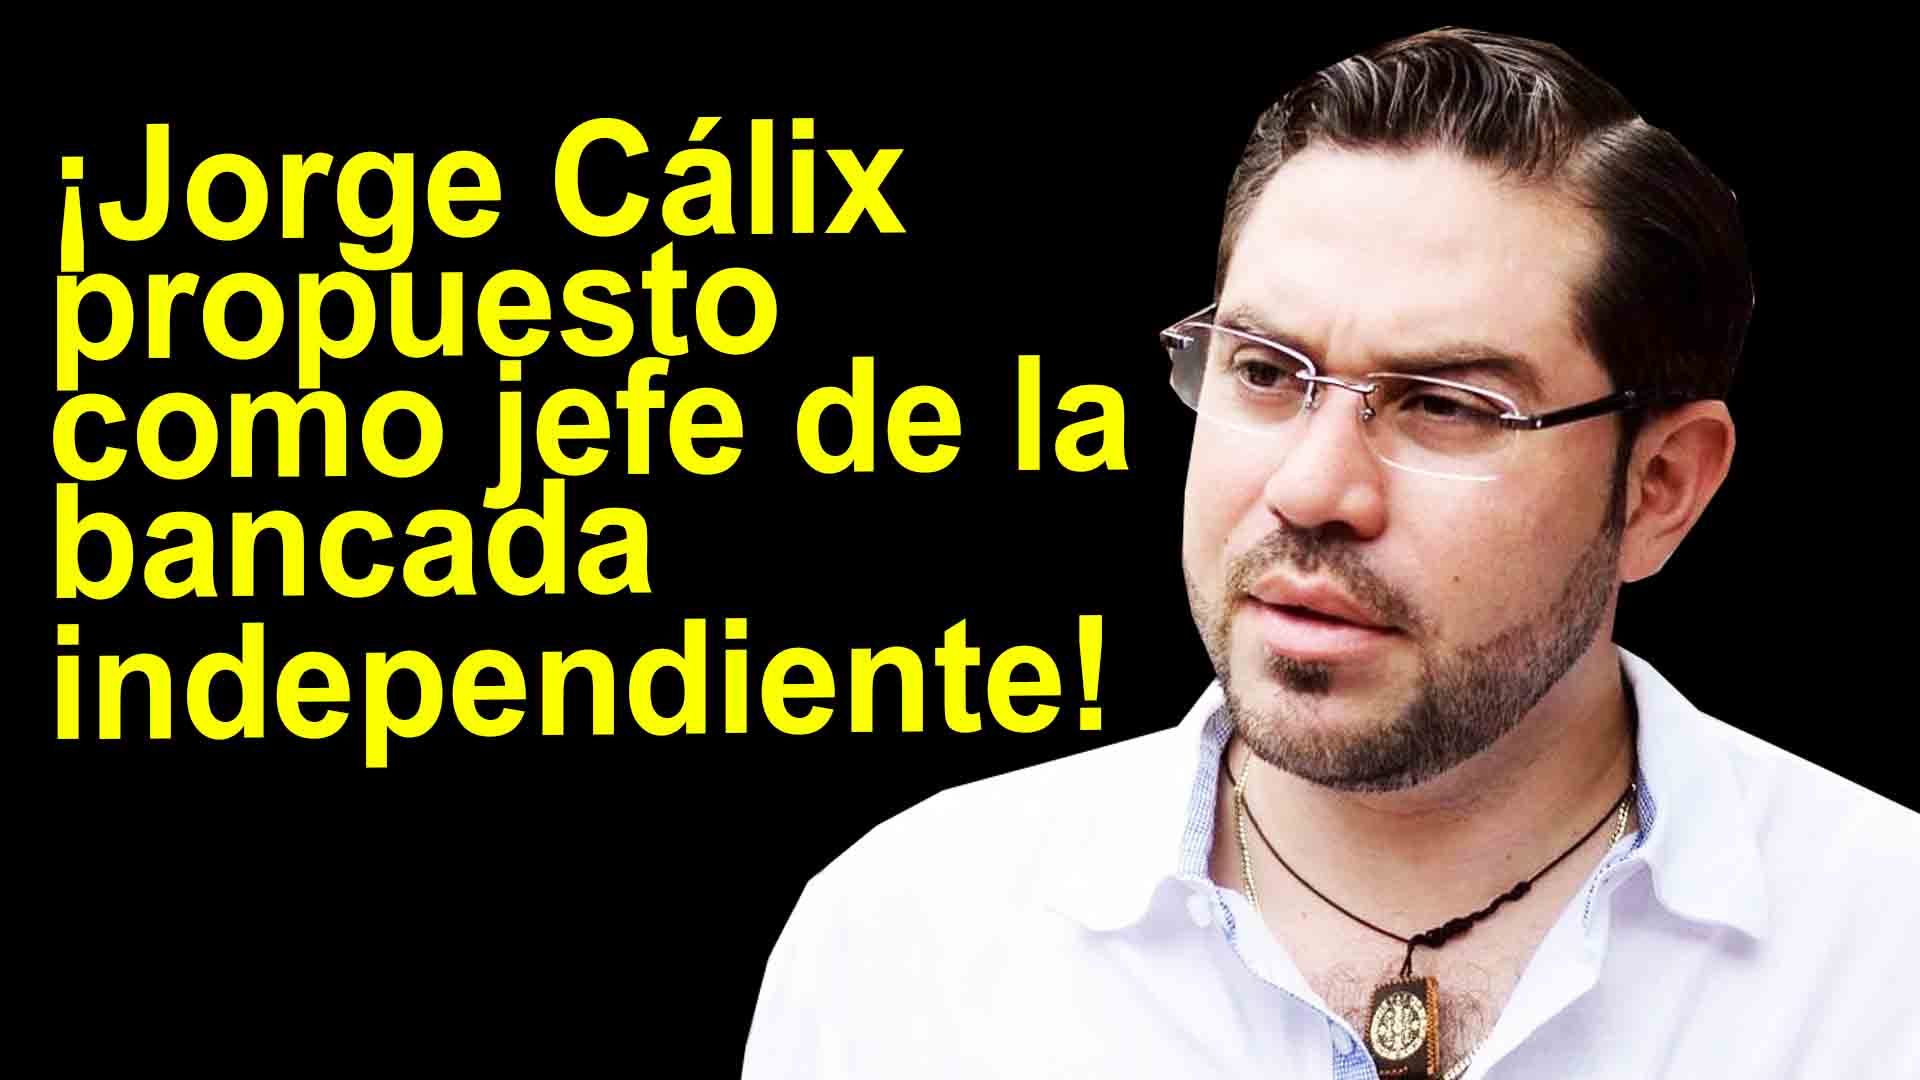 Jorge Cálix propuesto como jefe de la bancada independiente de Libre